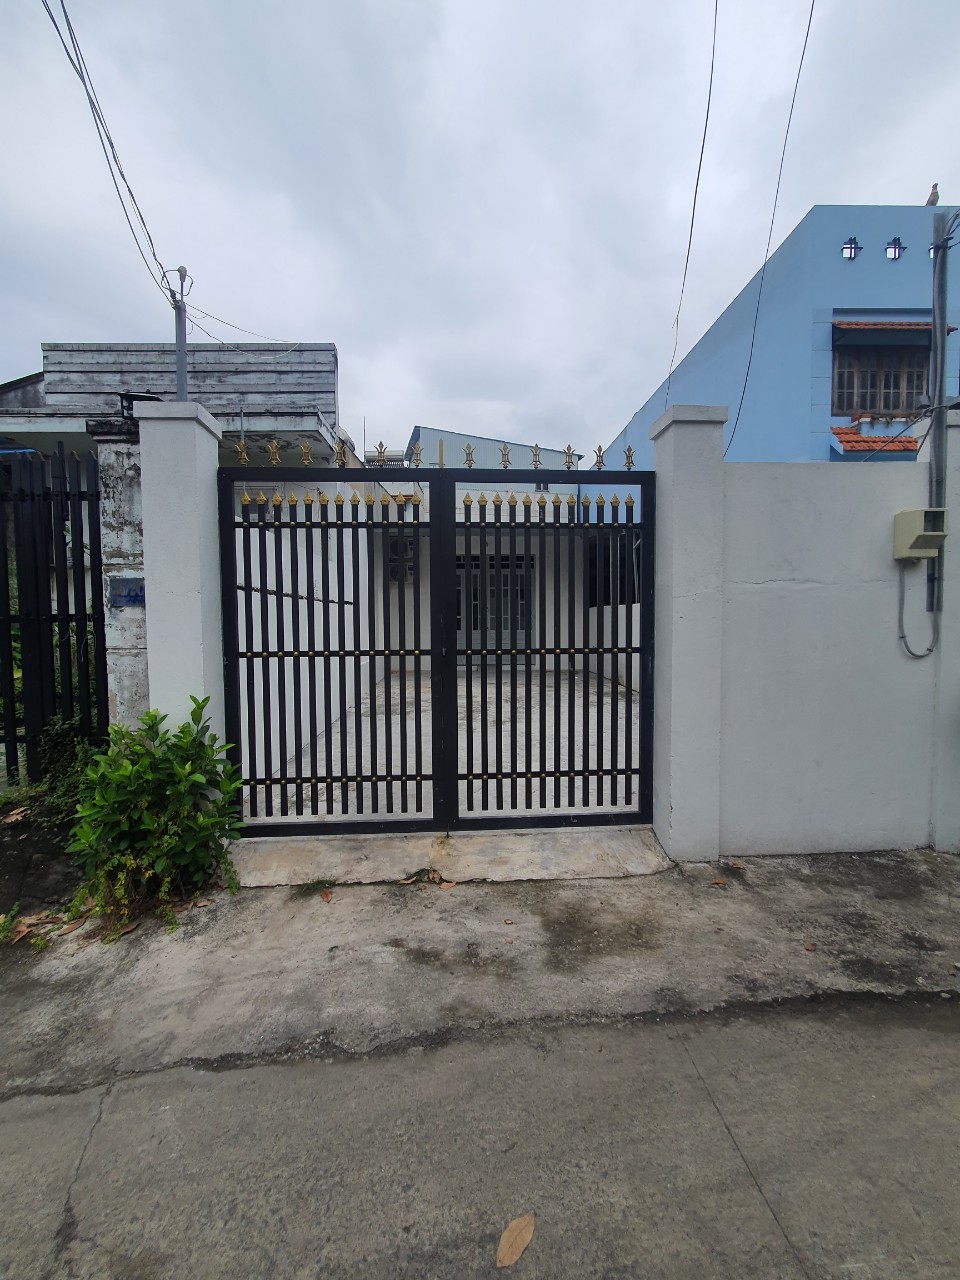 Cho thuê nhà nguyên căn đường số 10 gần Nguyễn Thị Định nhà có sân rộng 2pn wc, đã lắp máy lạnh, dtsd 110m2, Cọc 1 tháng. ☎ 0903034123